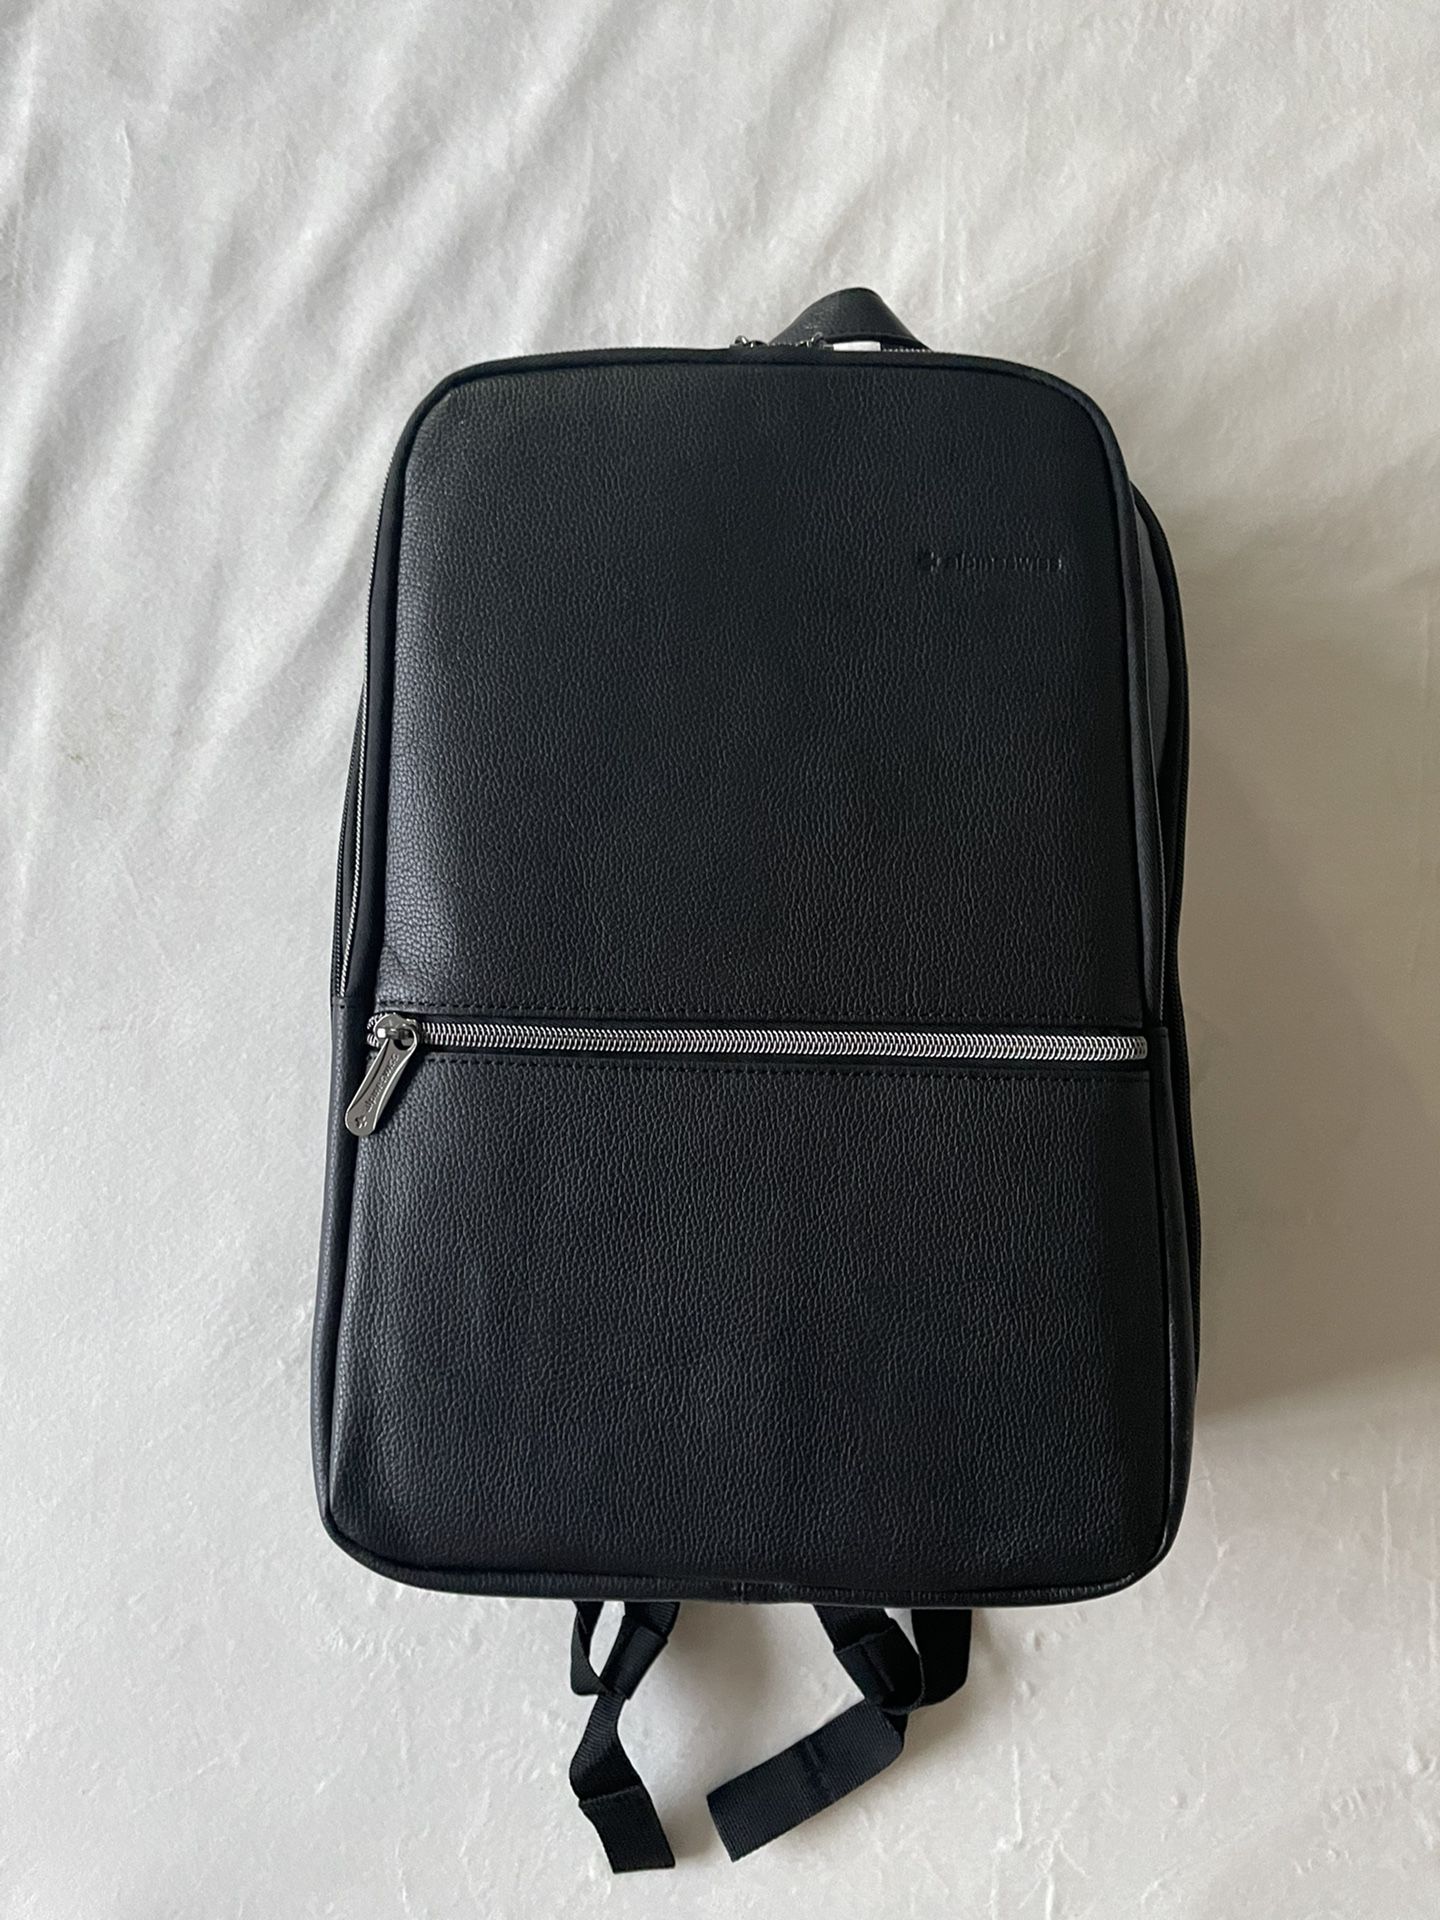 Alpine Swiss Men’s Sloan Slim Leather Laptop Backpack